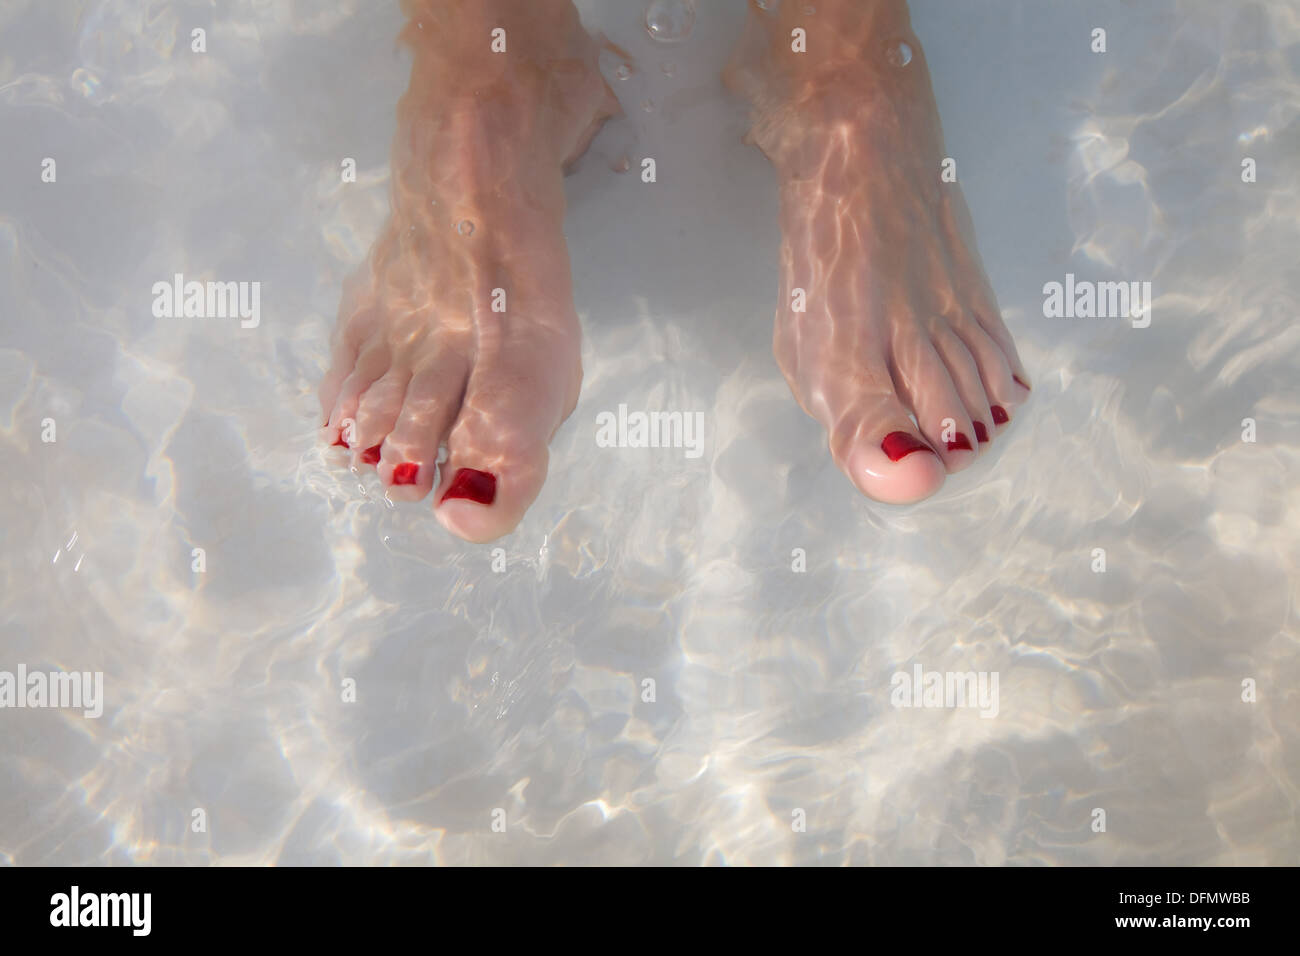 Le dita dei piedi dipinte di rosso in una piscina di acqua. Foto Stock